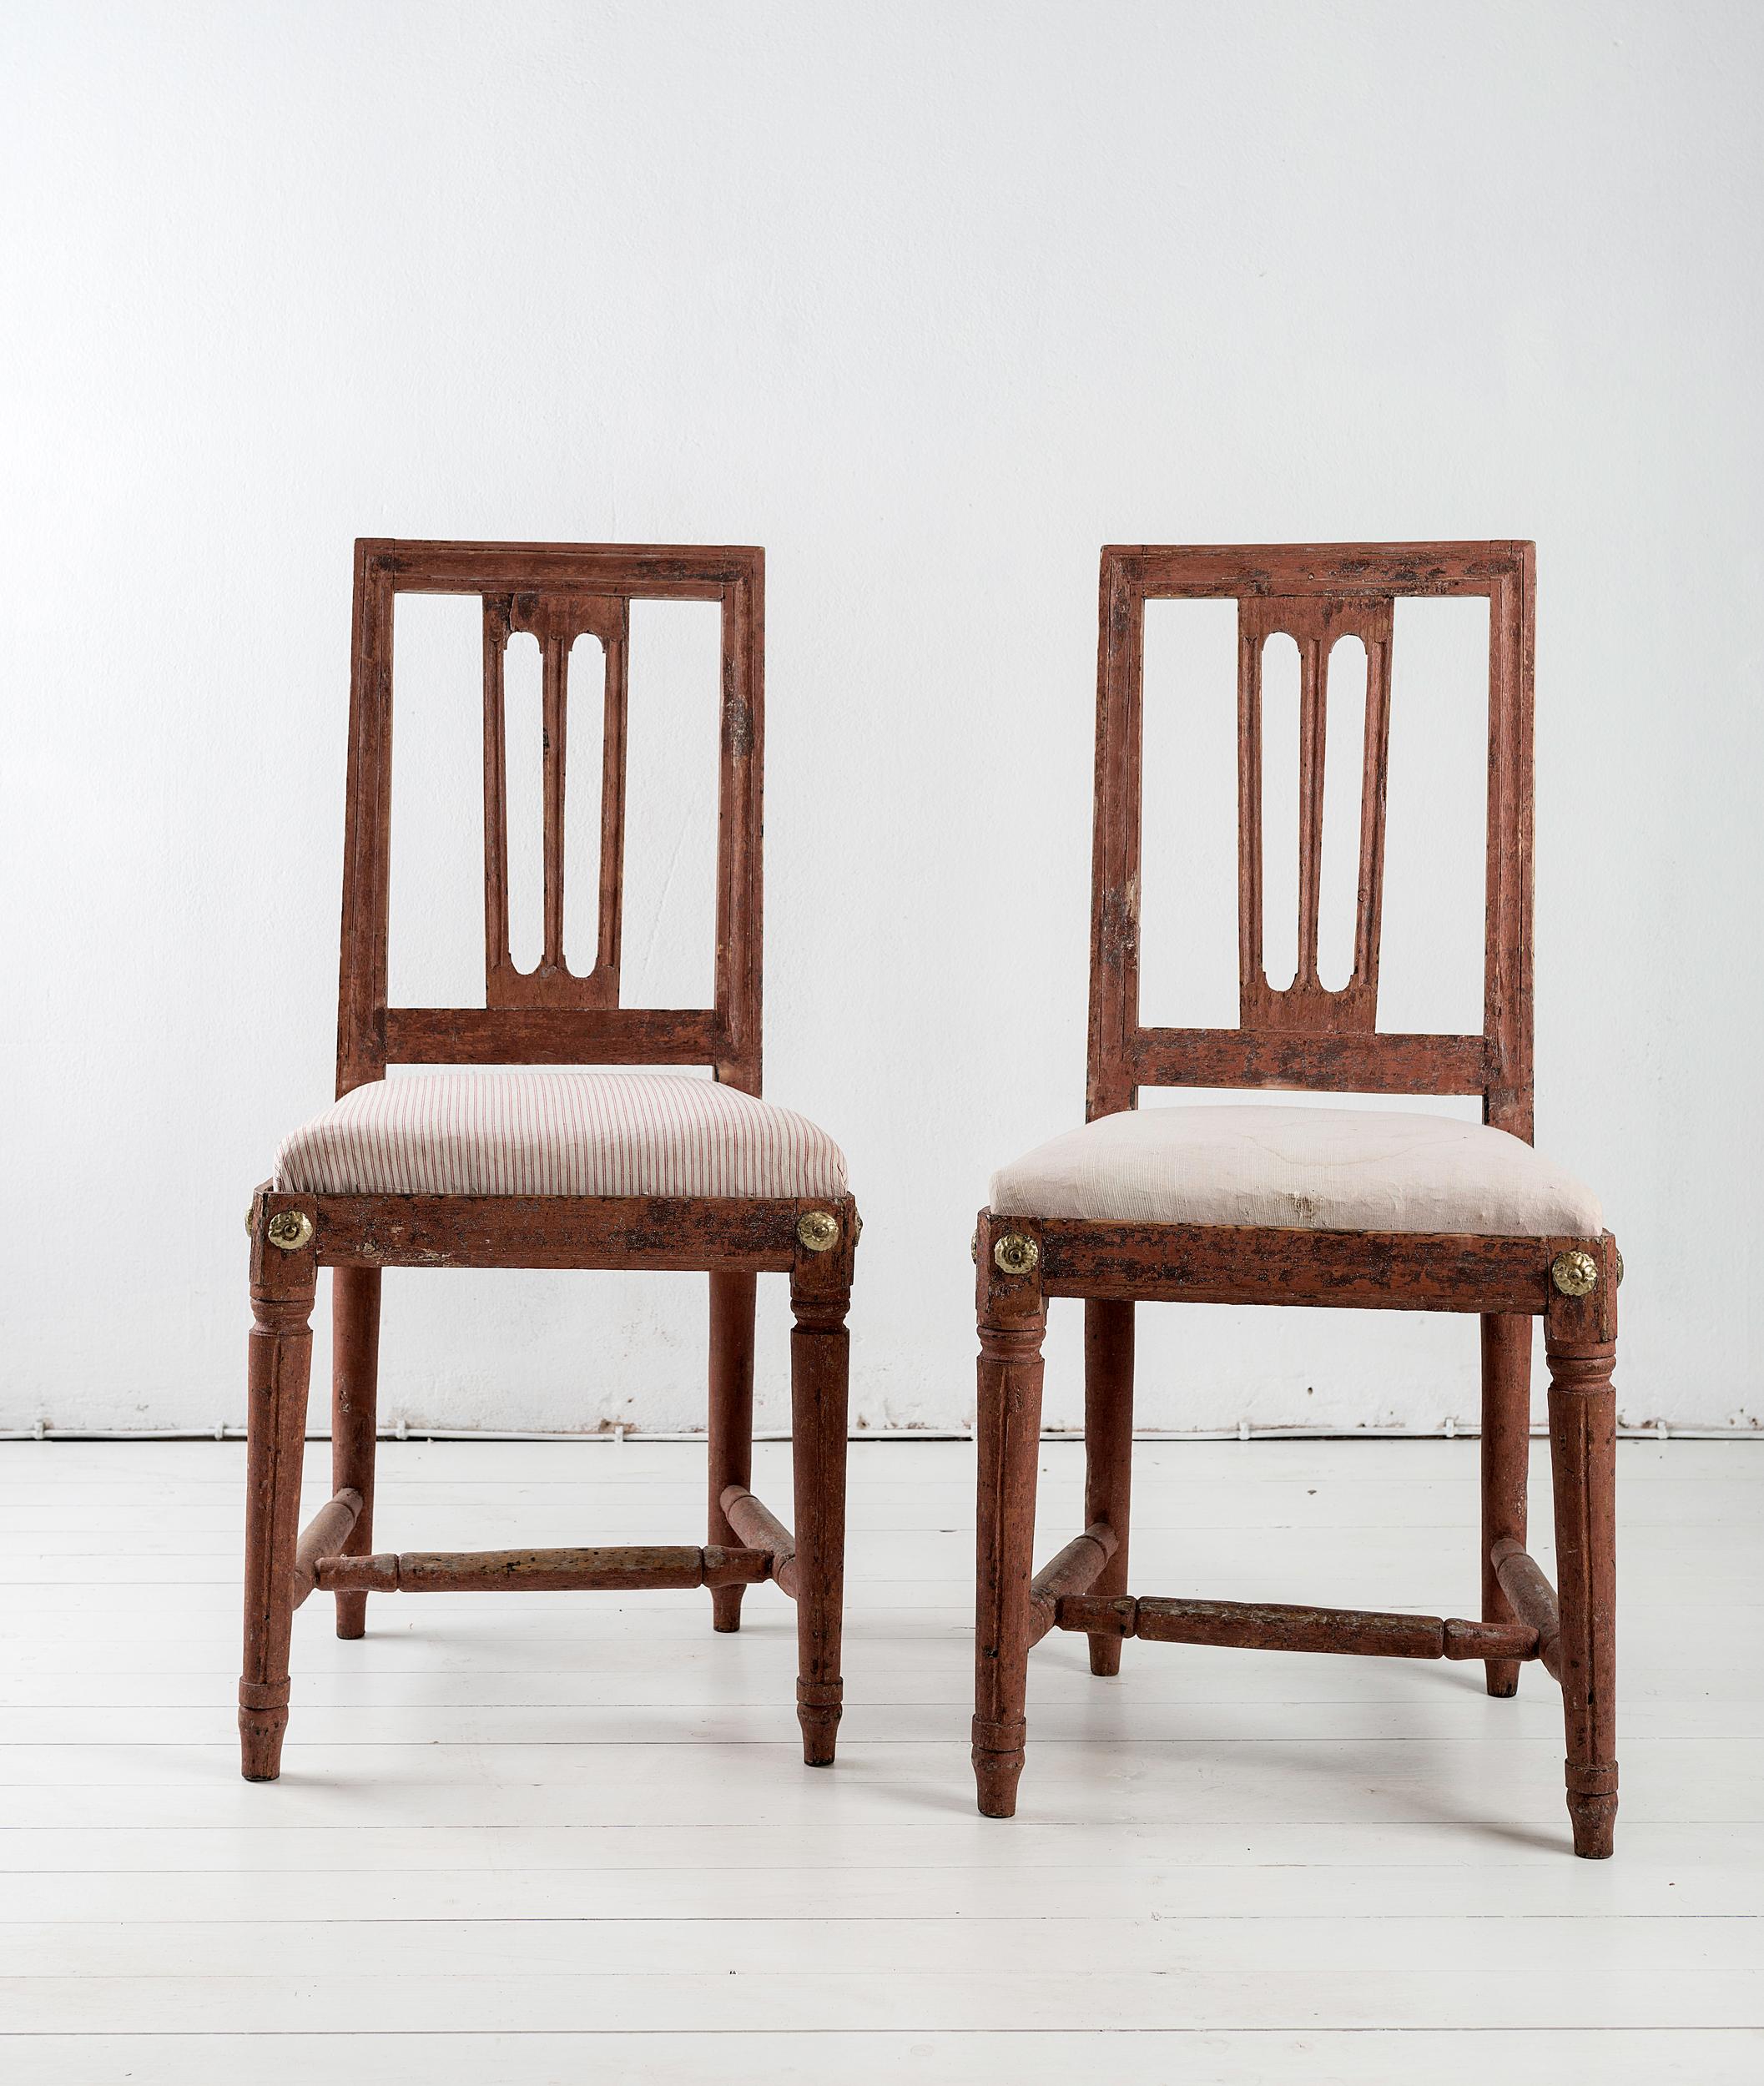 Feines Paar gustavianischer Esszimmerstühle, die ihre Originalfarbe behalten haben.

 